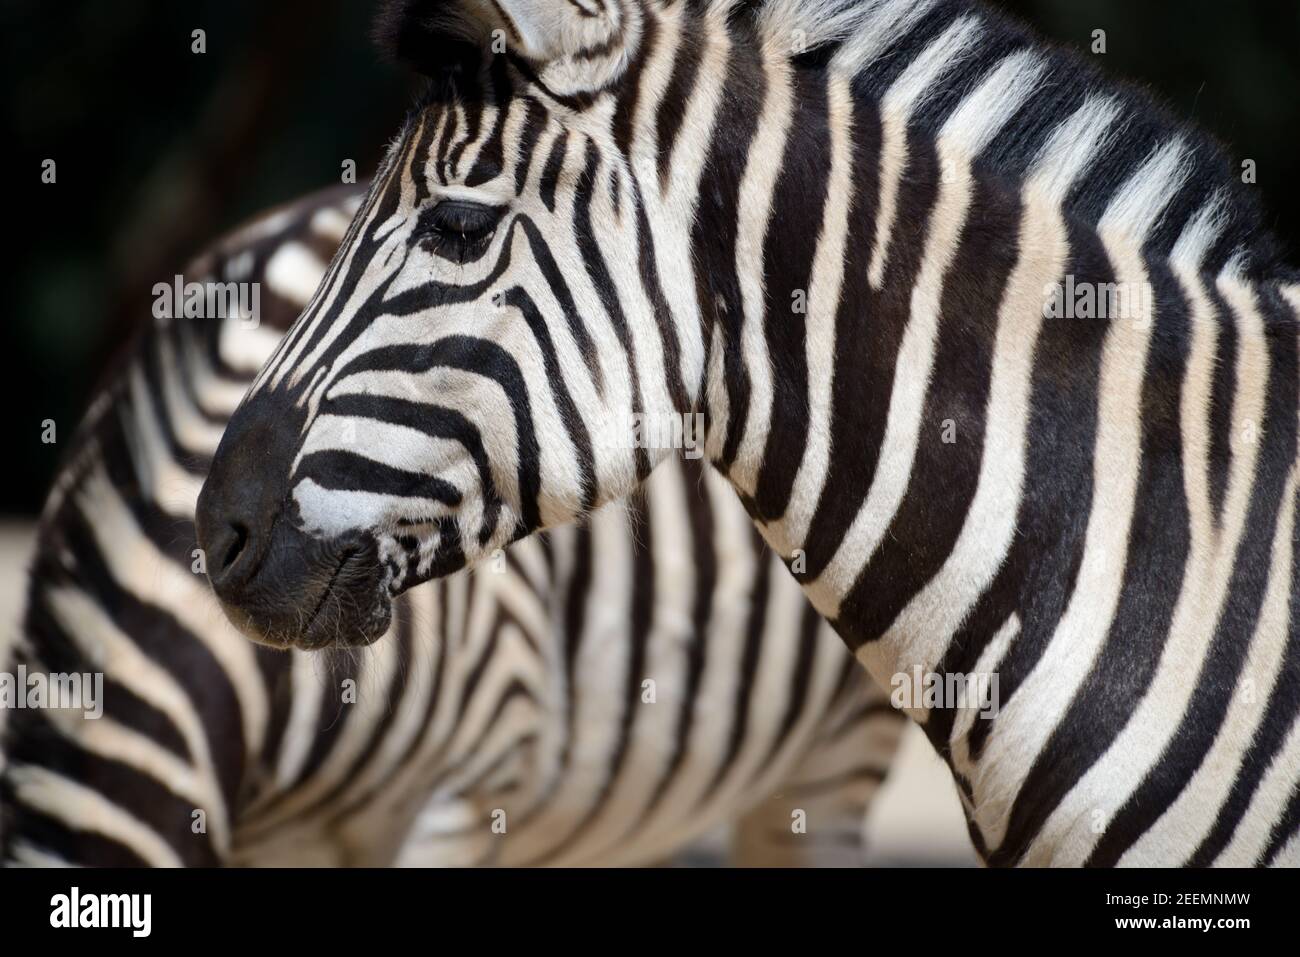 Portrait of Burchell's Zebra or Zebras, Equus quagga burchellii Stock Photo